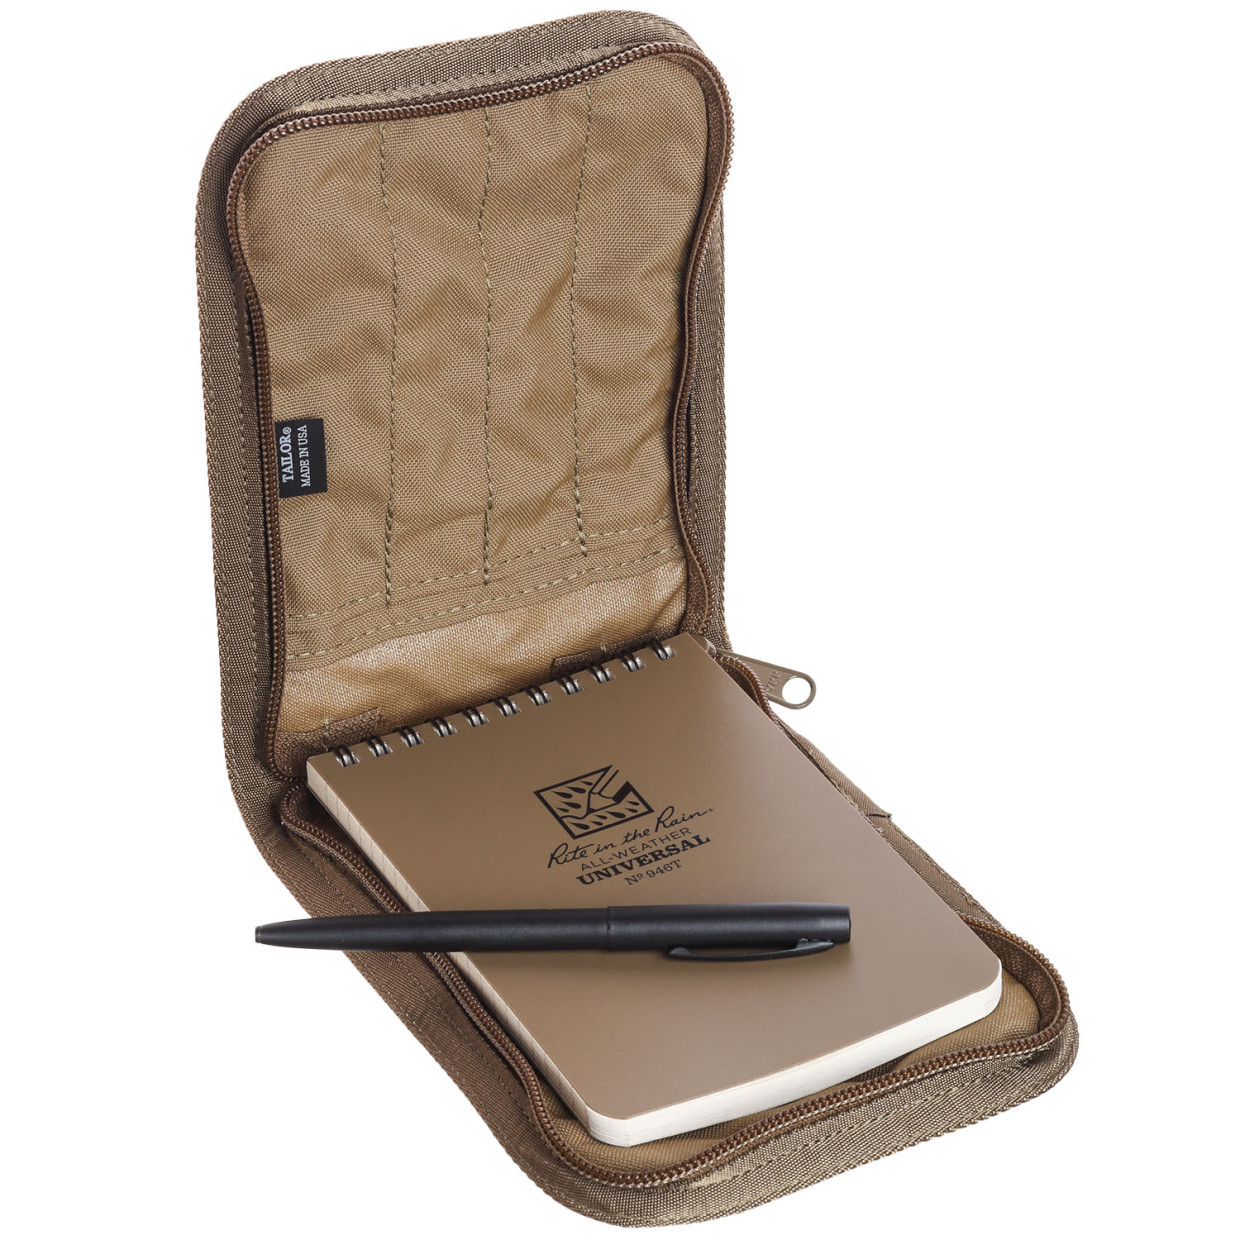 Tactical set – Pocket Notebook 4/6